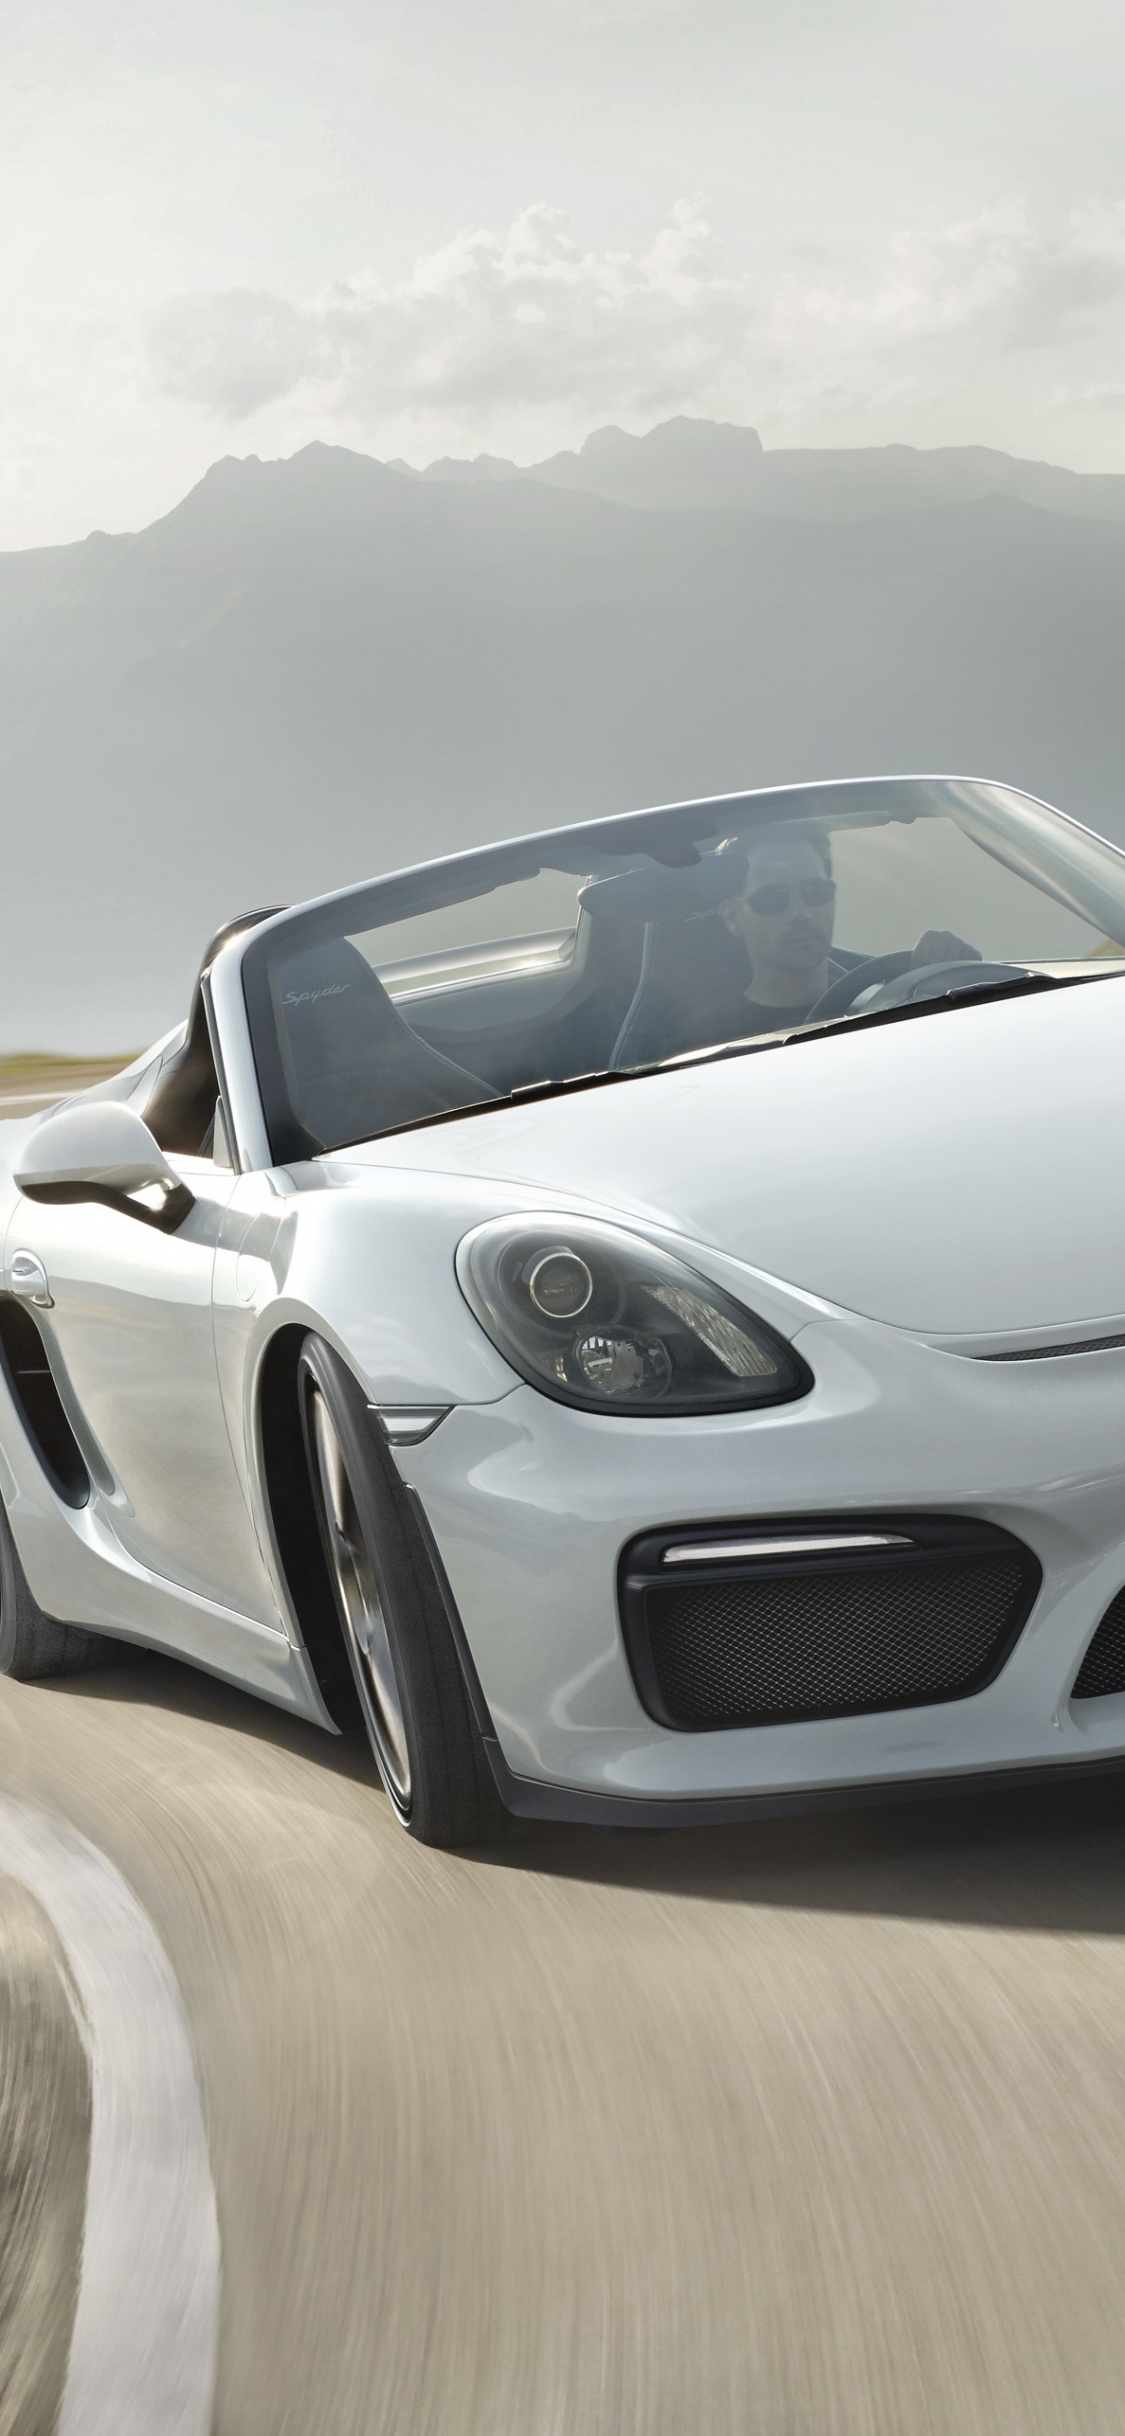 Weißer Porsche 911 Tagsüber Unterwegs. Wallpaper in 1125x2436 Resolution